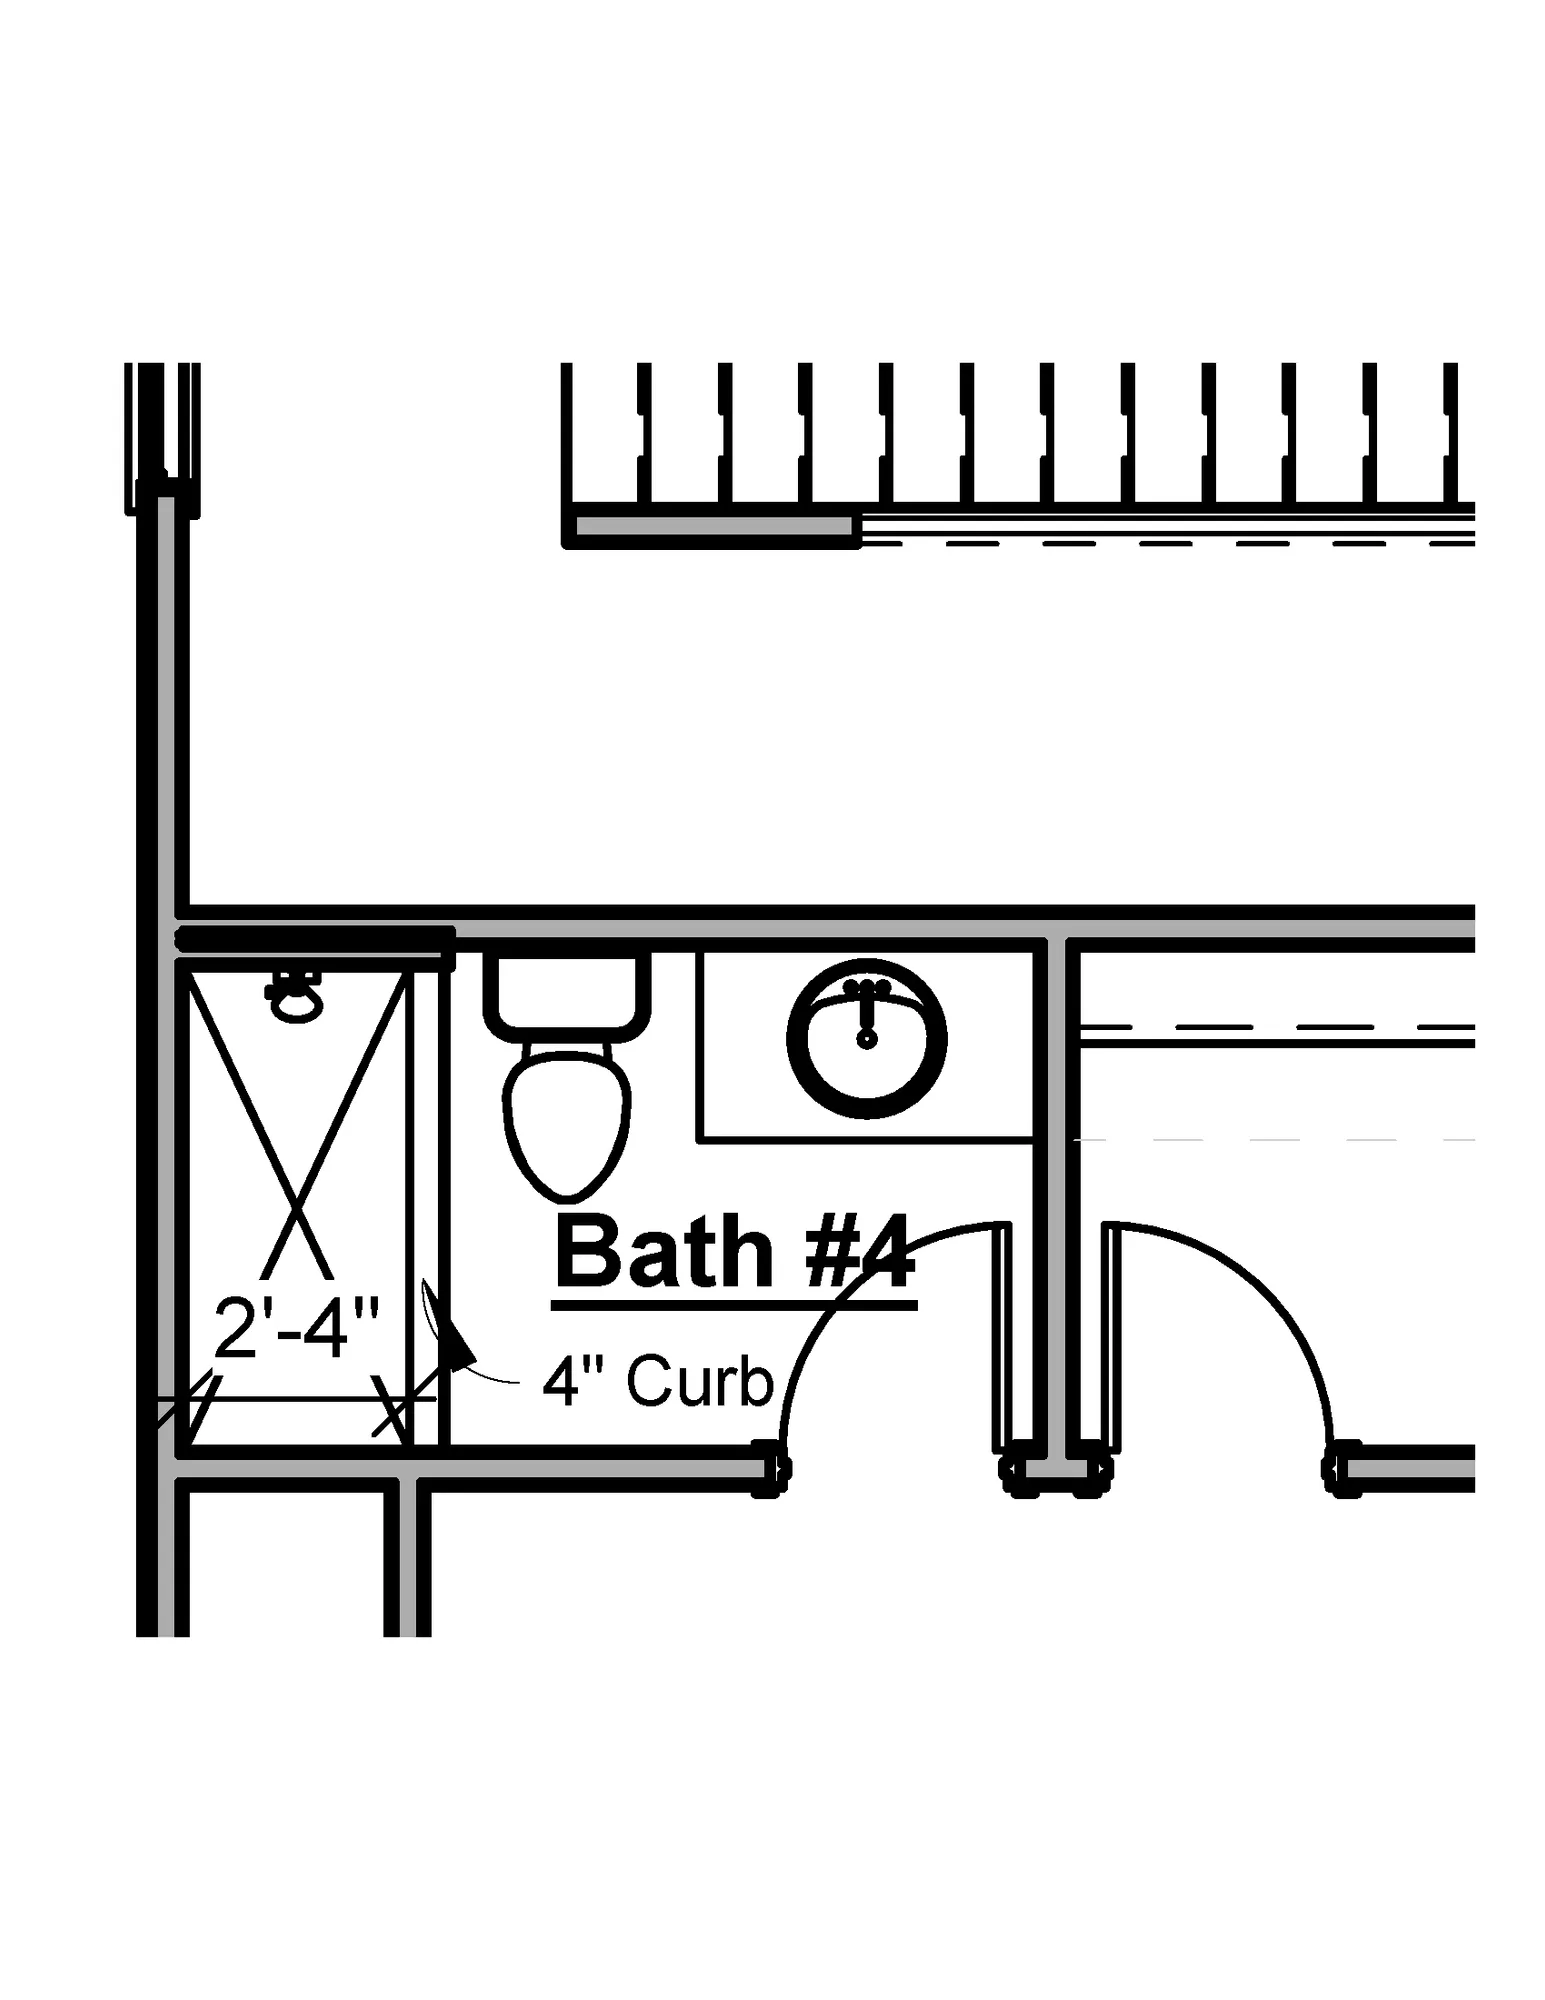 5th Bedroom Bath 4 Tile Shower - undefined